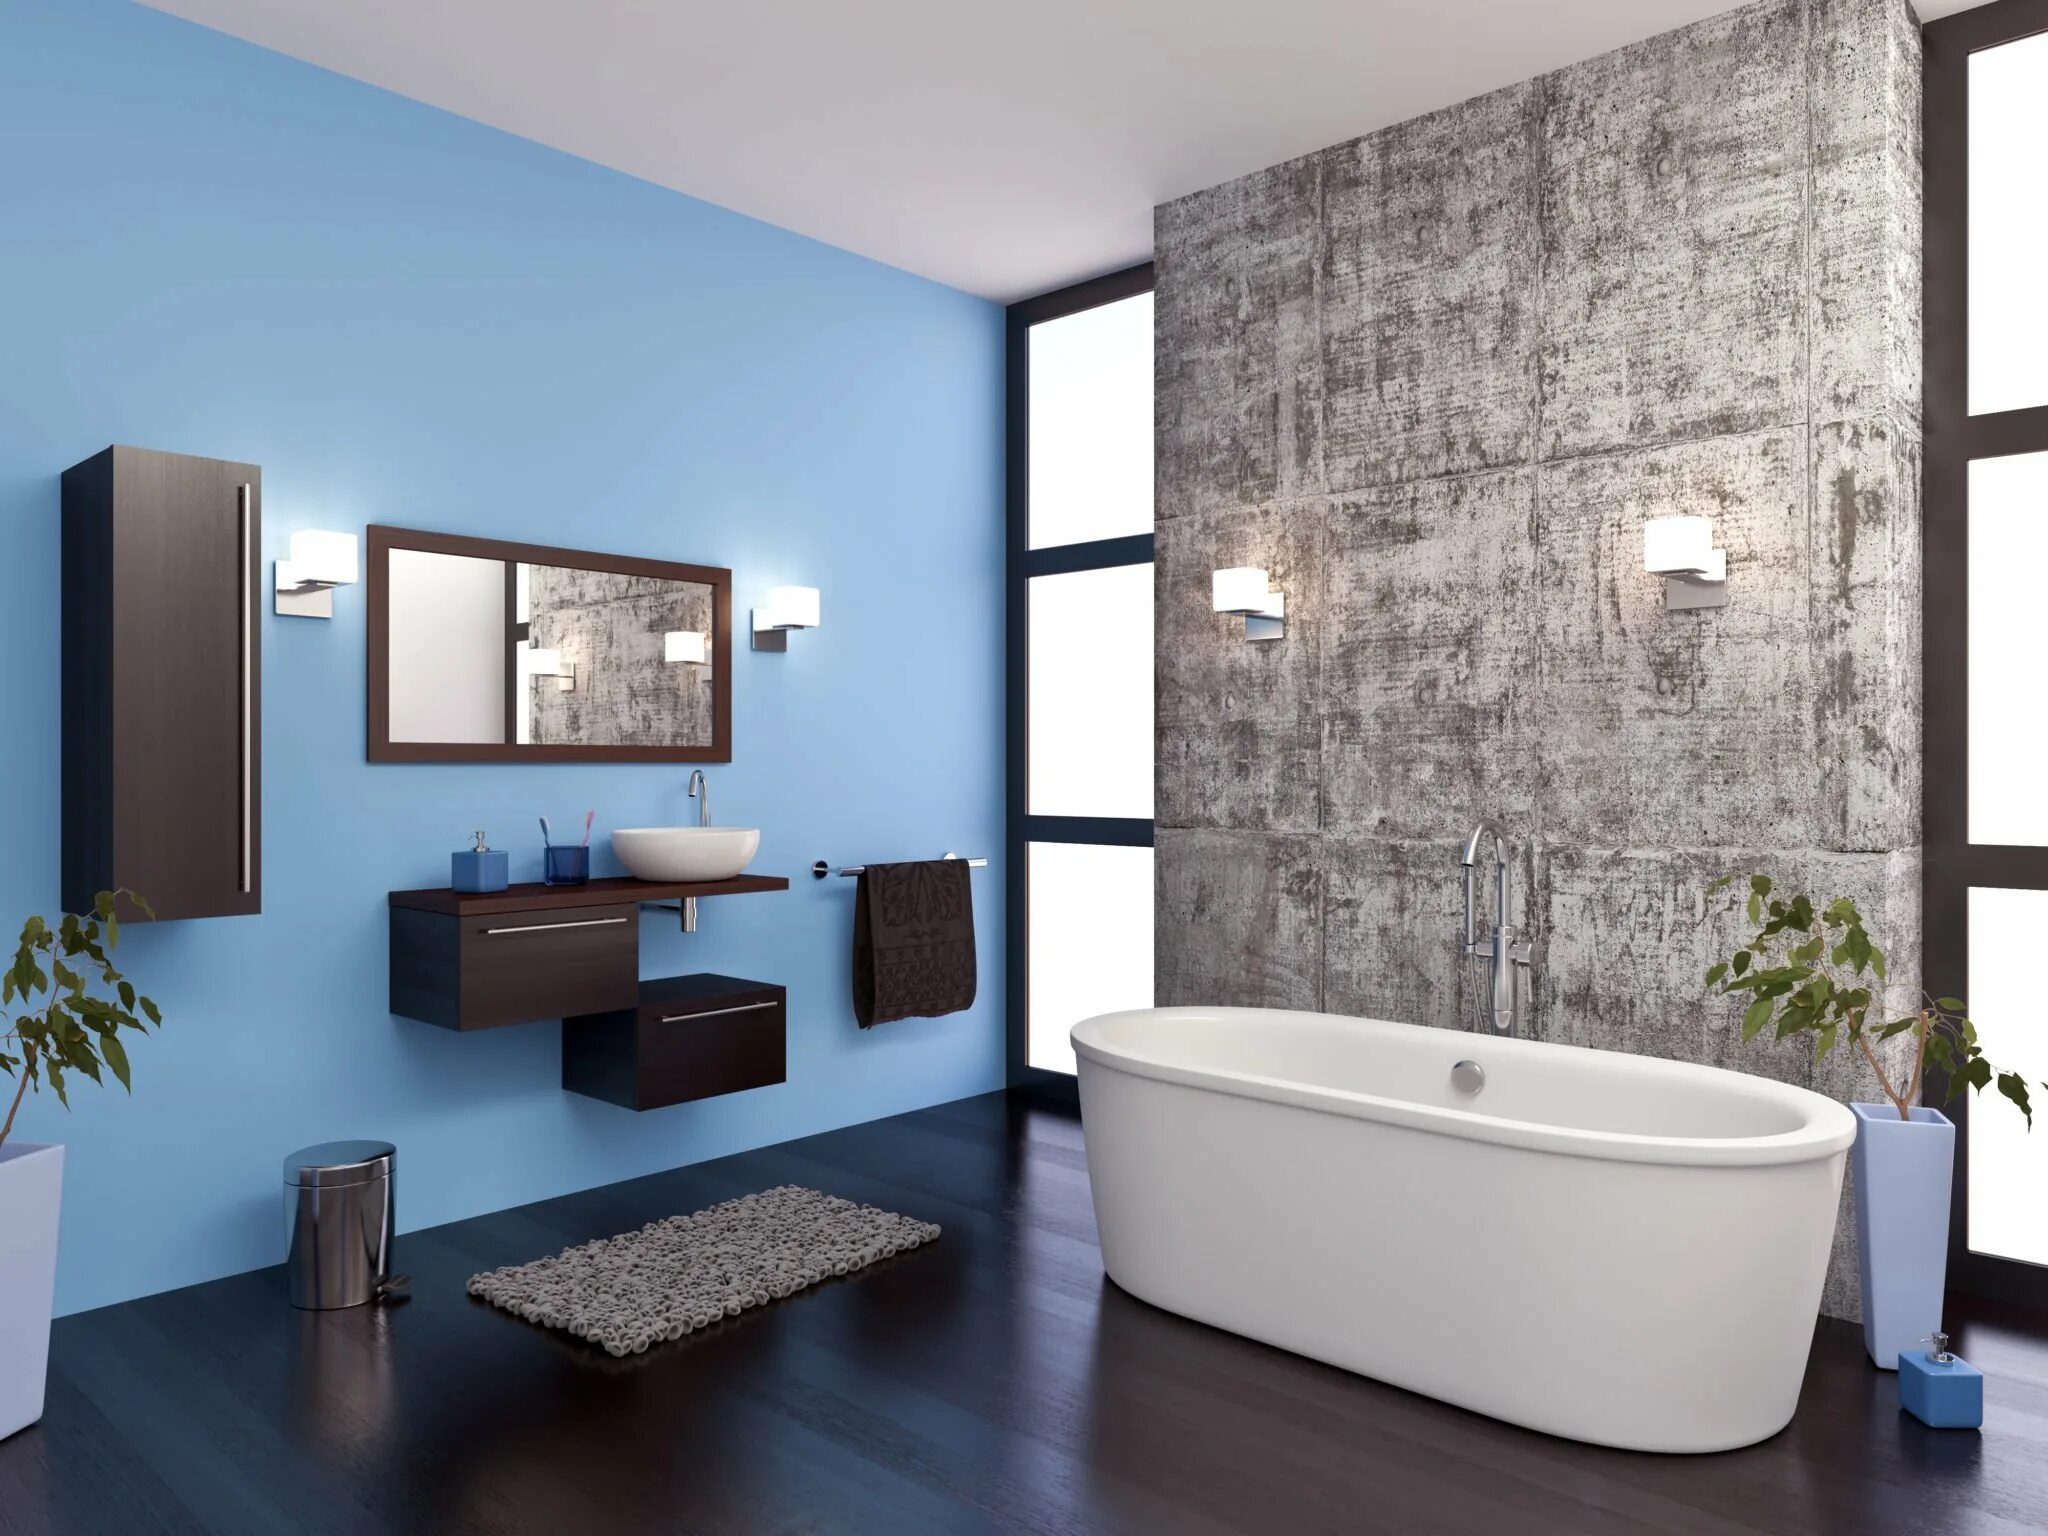 Ванная комната. Ванная комната современная отделка. Комбинированные стены в ванной. Отделка стен в ванной комнате.